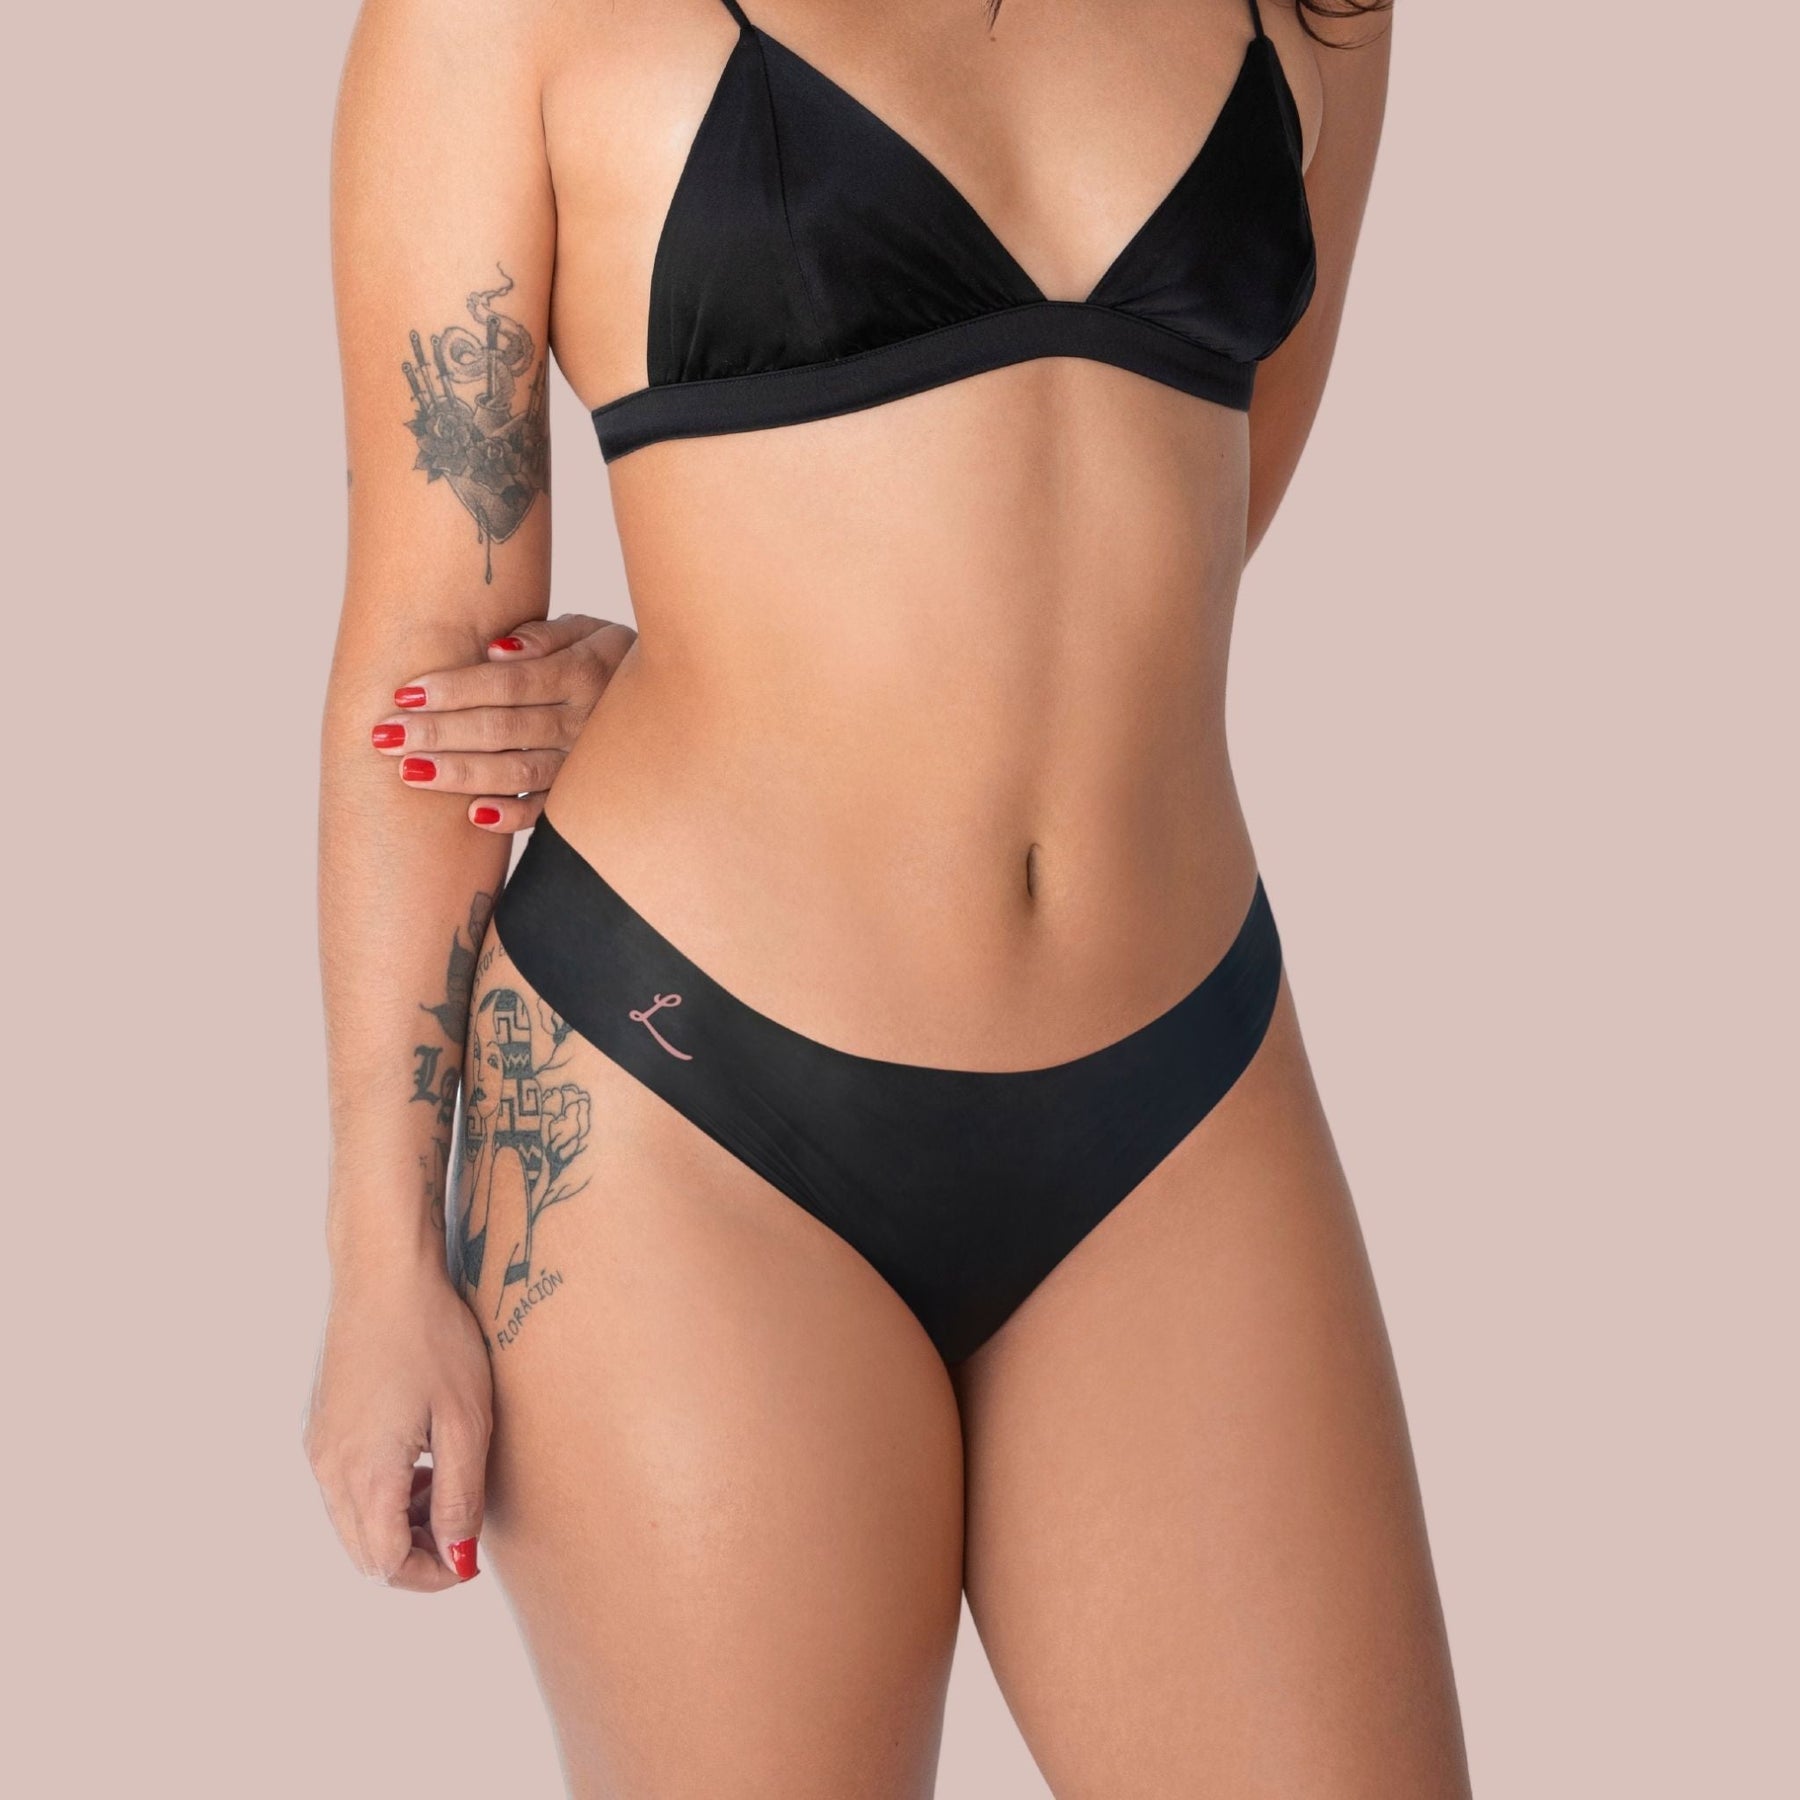 The front side of a woman wearing Lorals for Pleasure Bikini panties |Bikini